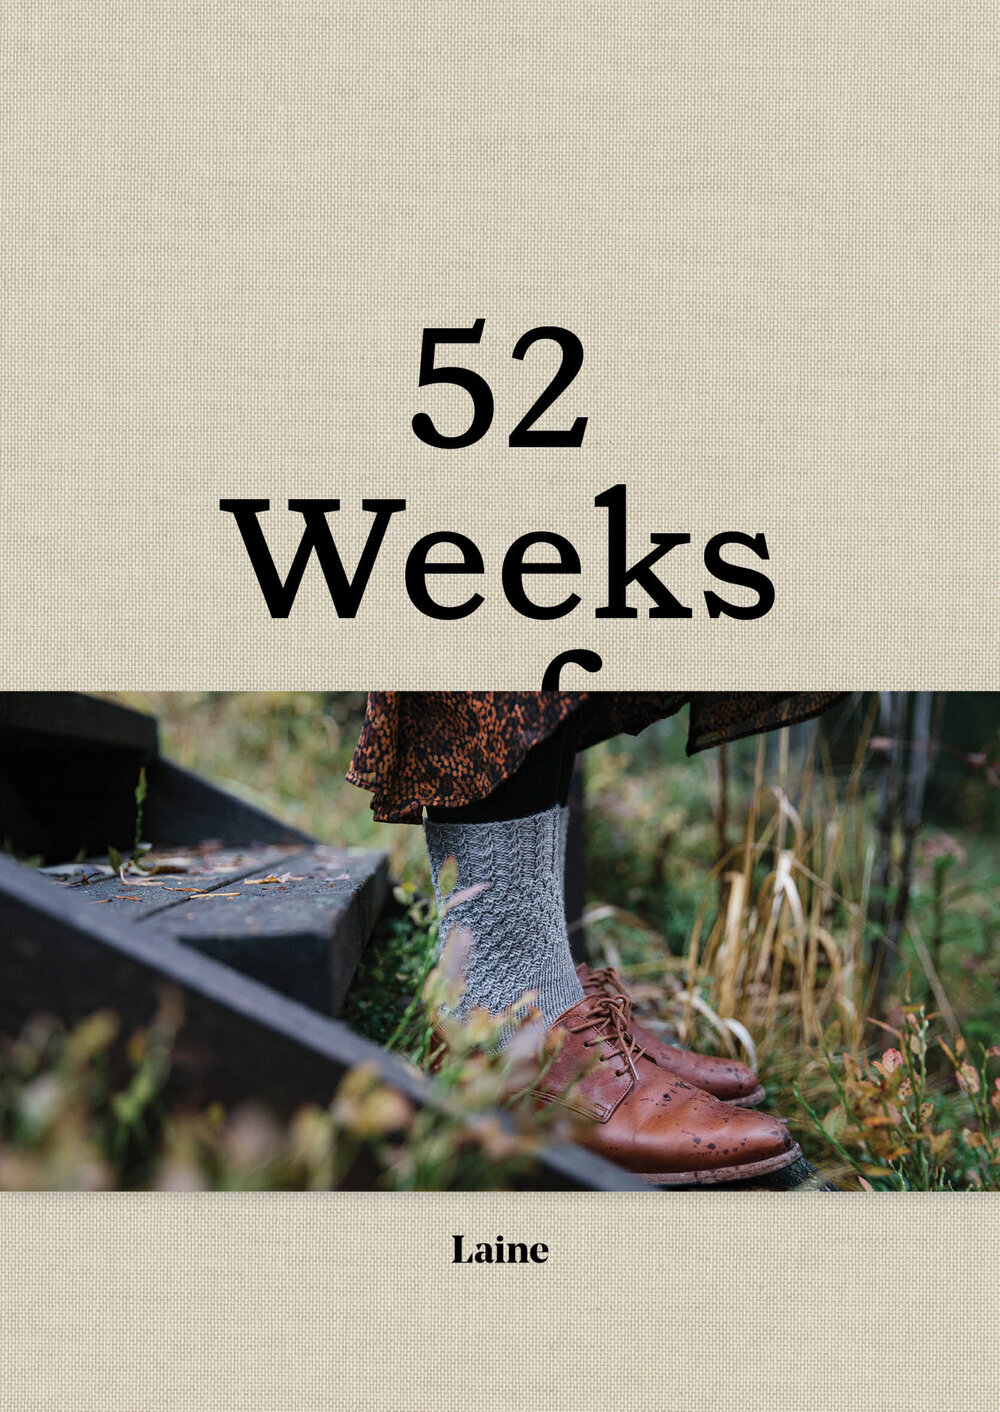 52 Weeks of Socks [Book]